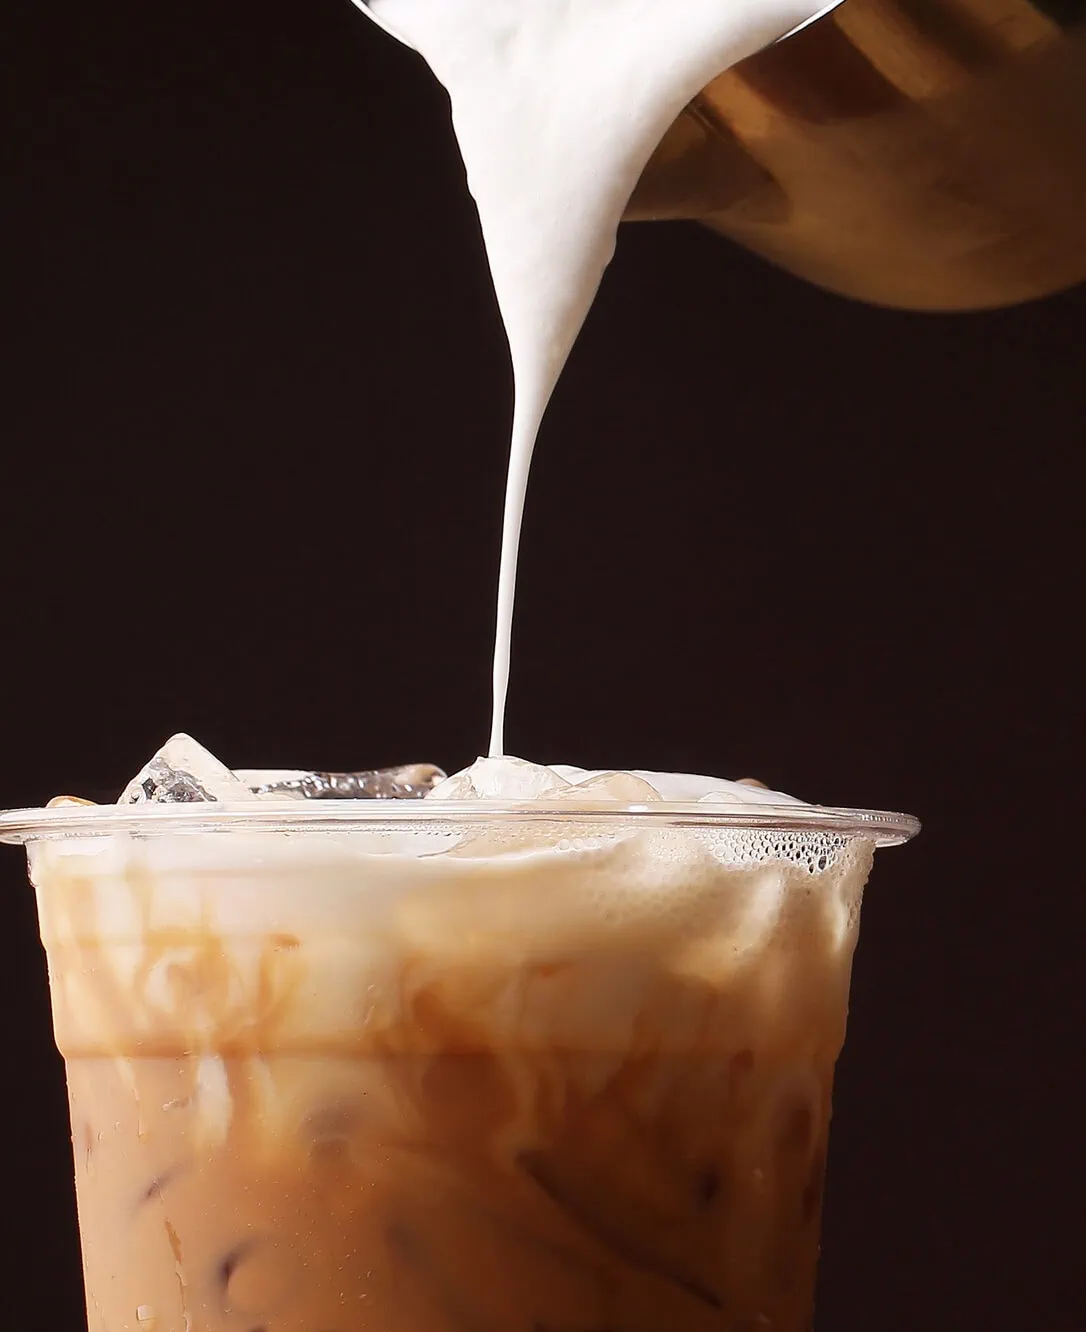 Ice cappuccino and milk foam